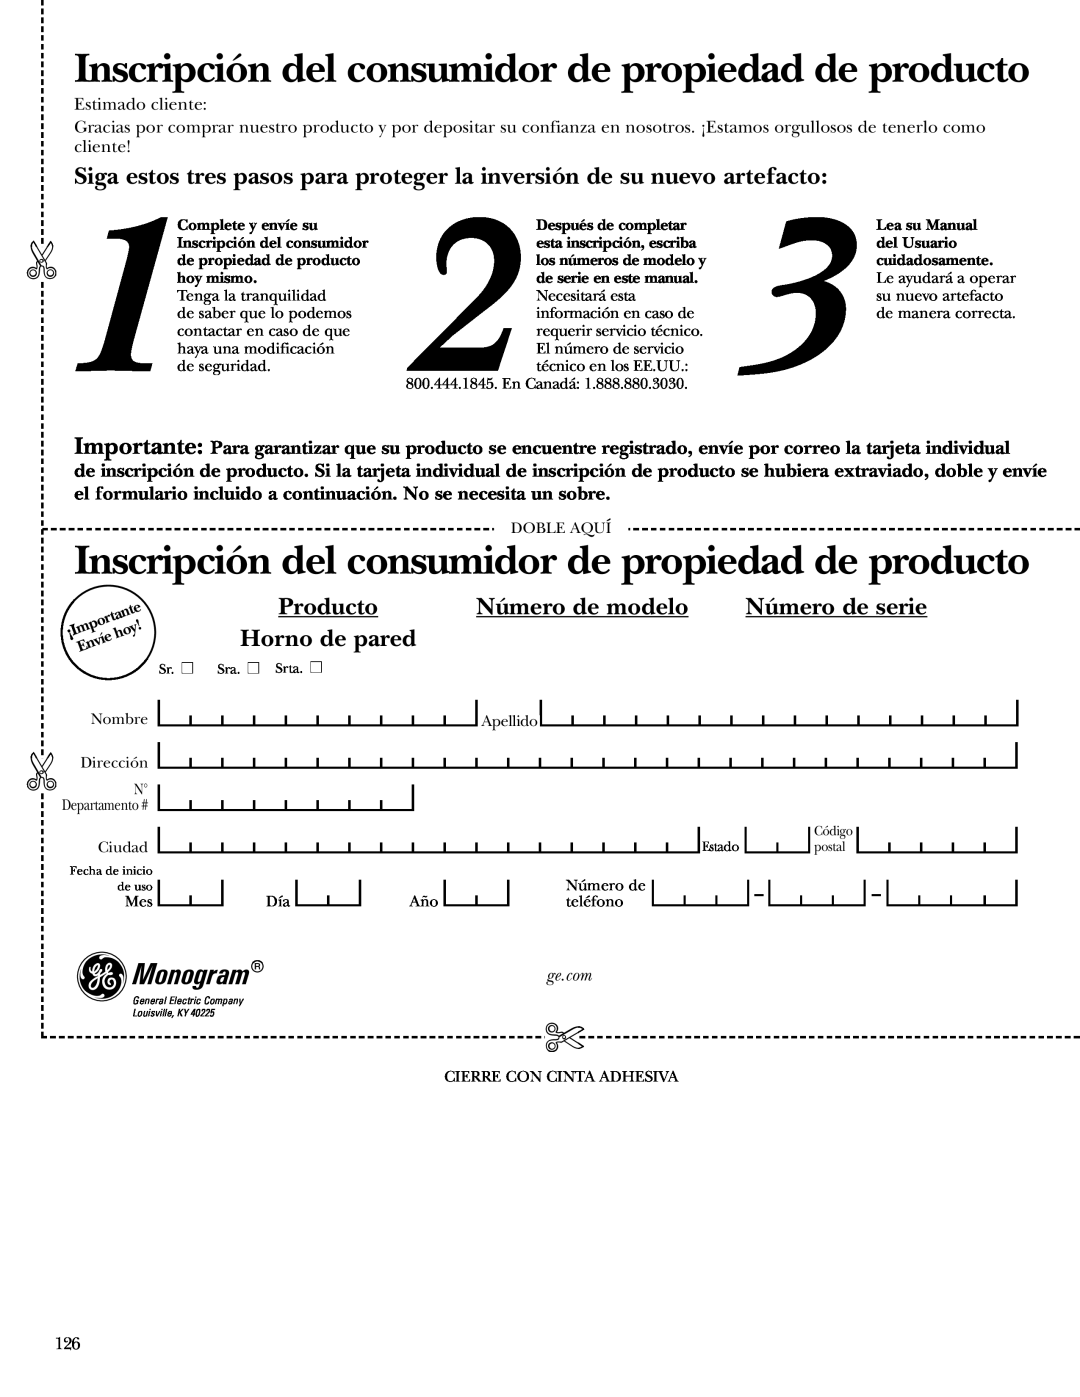 GE ZET2P Inscripción del consumidor de propiedad de producto, Producto, Número de modelo, Número de serie, Horno de pared 